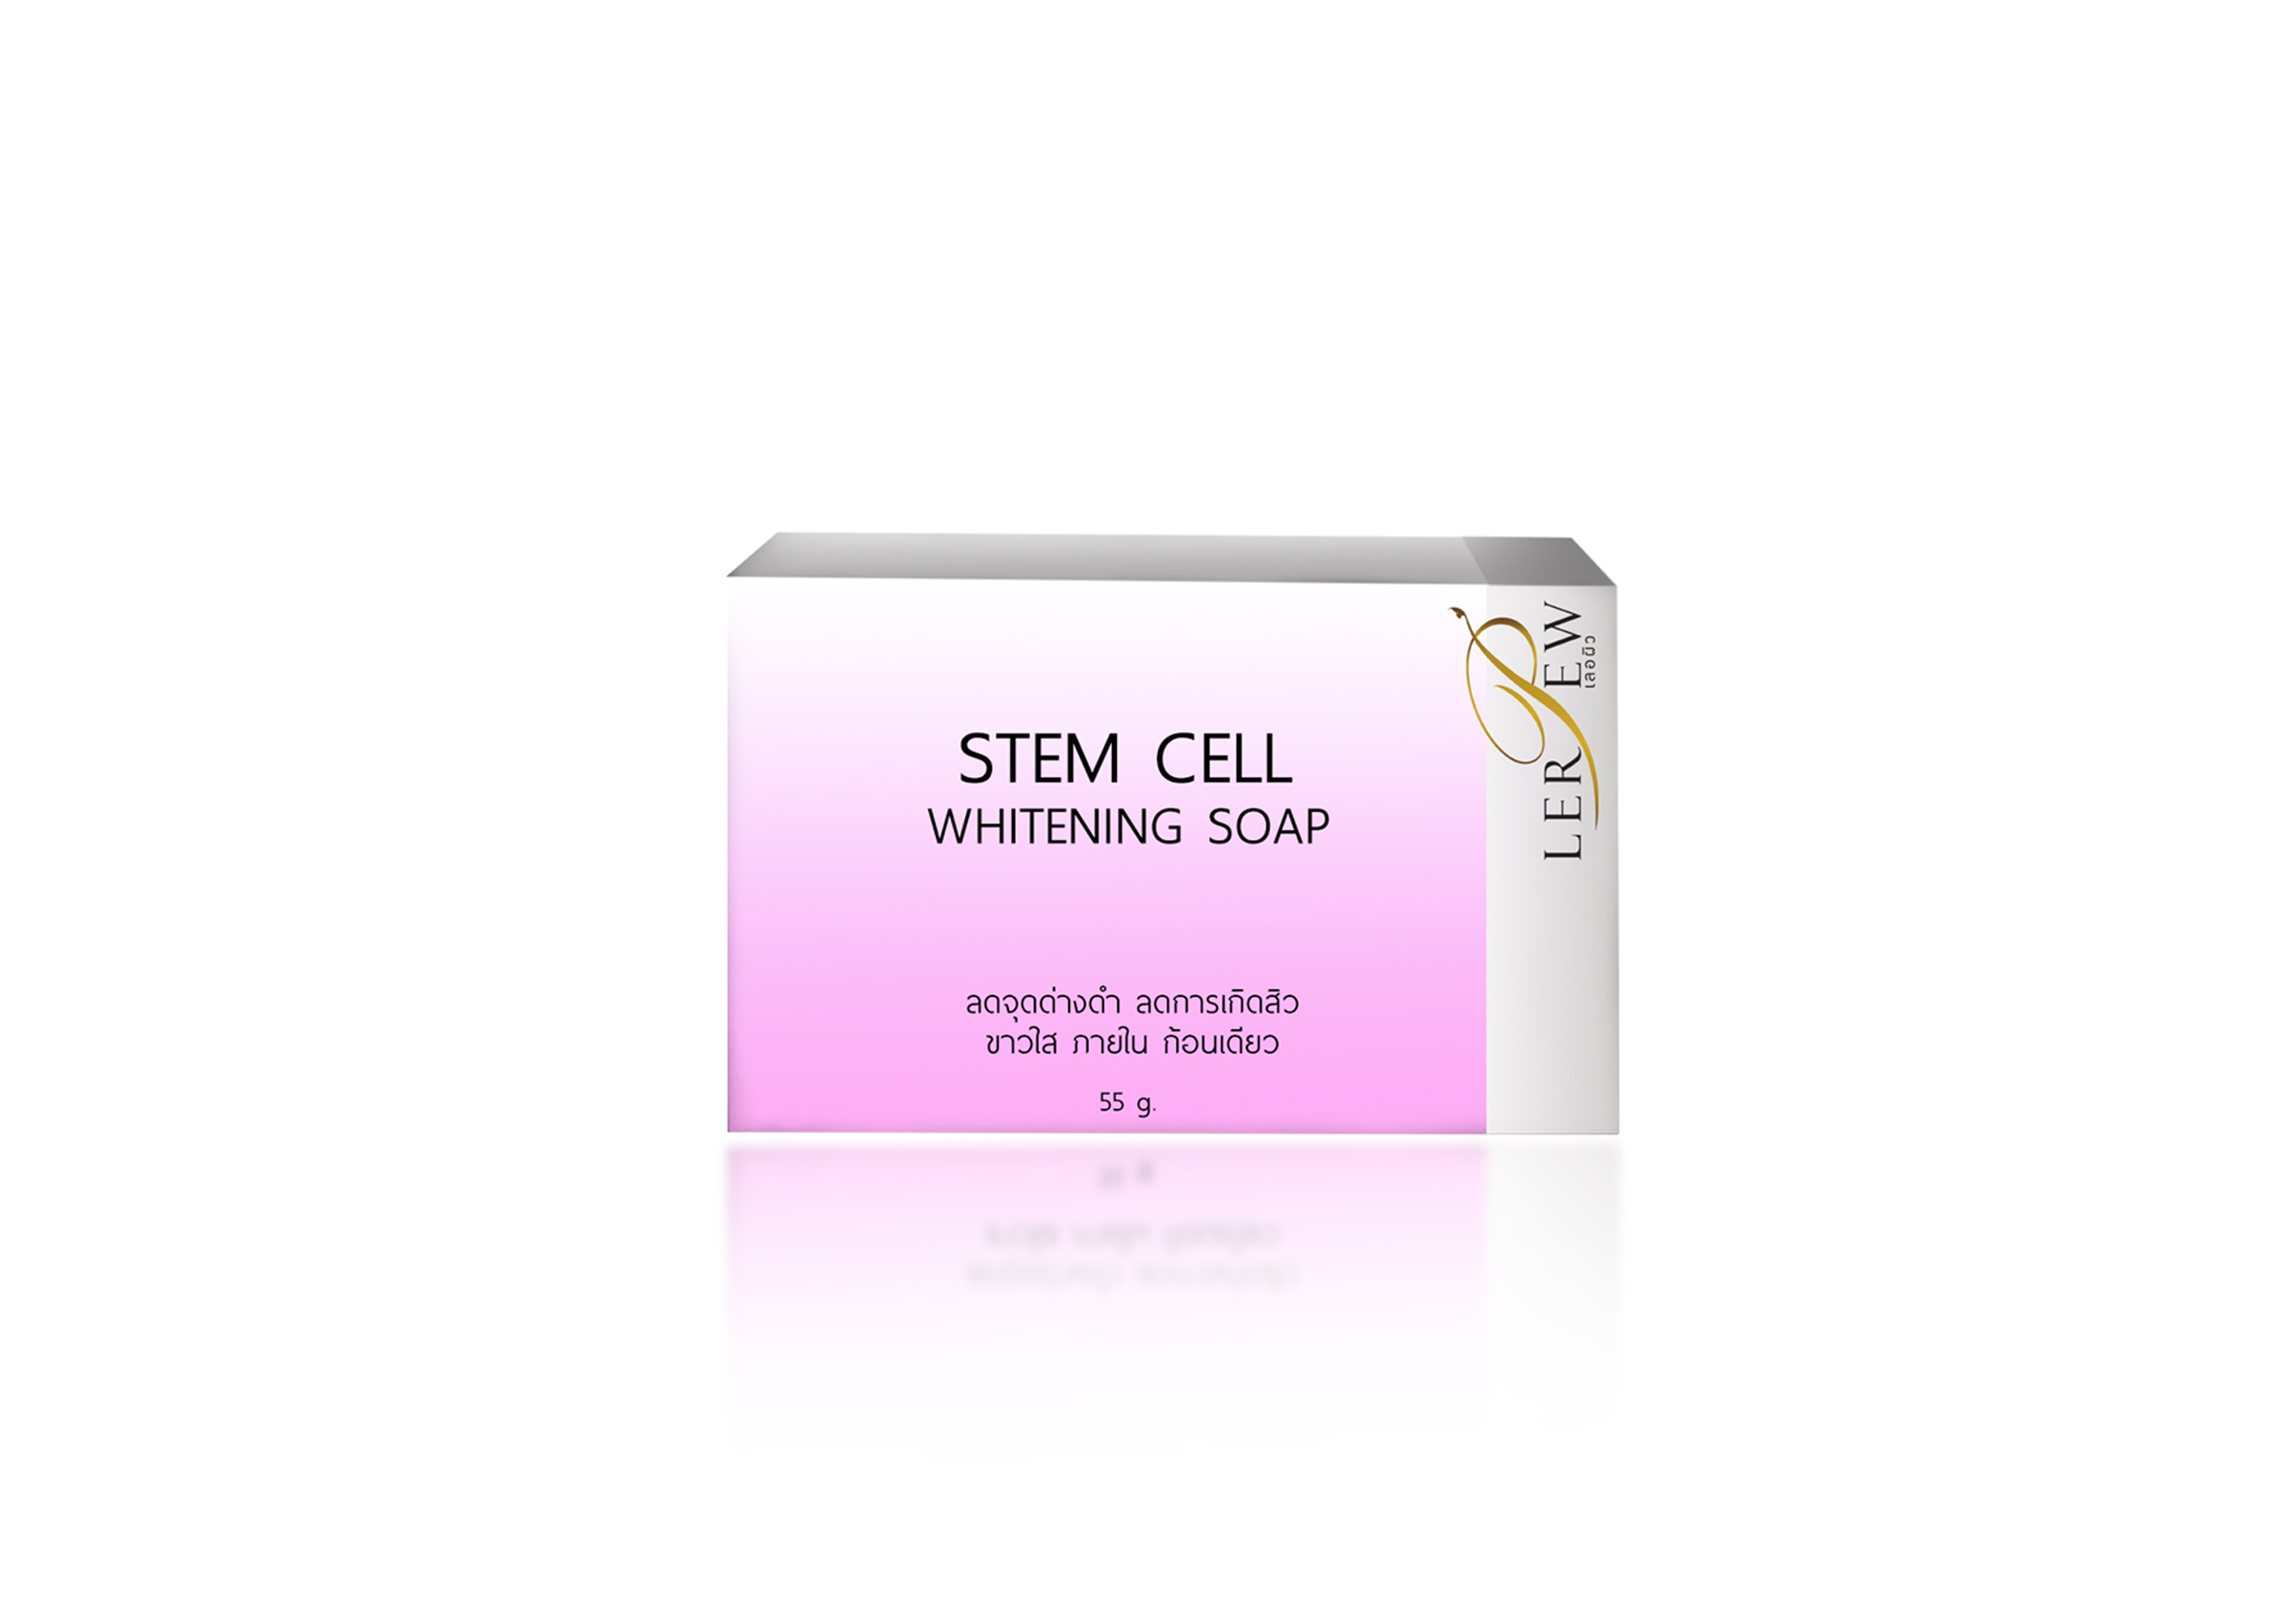 STEM CELL WHITENING SOAP